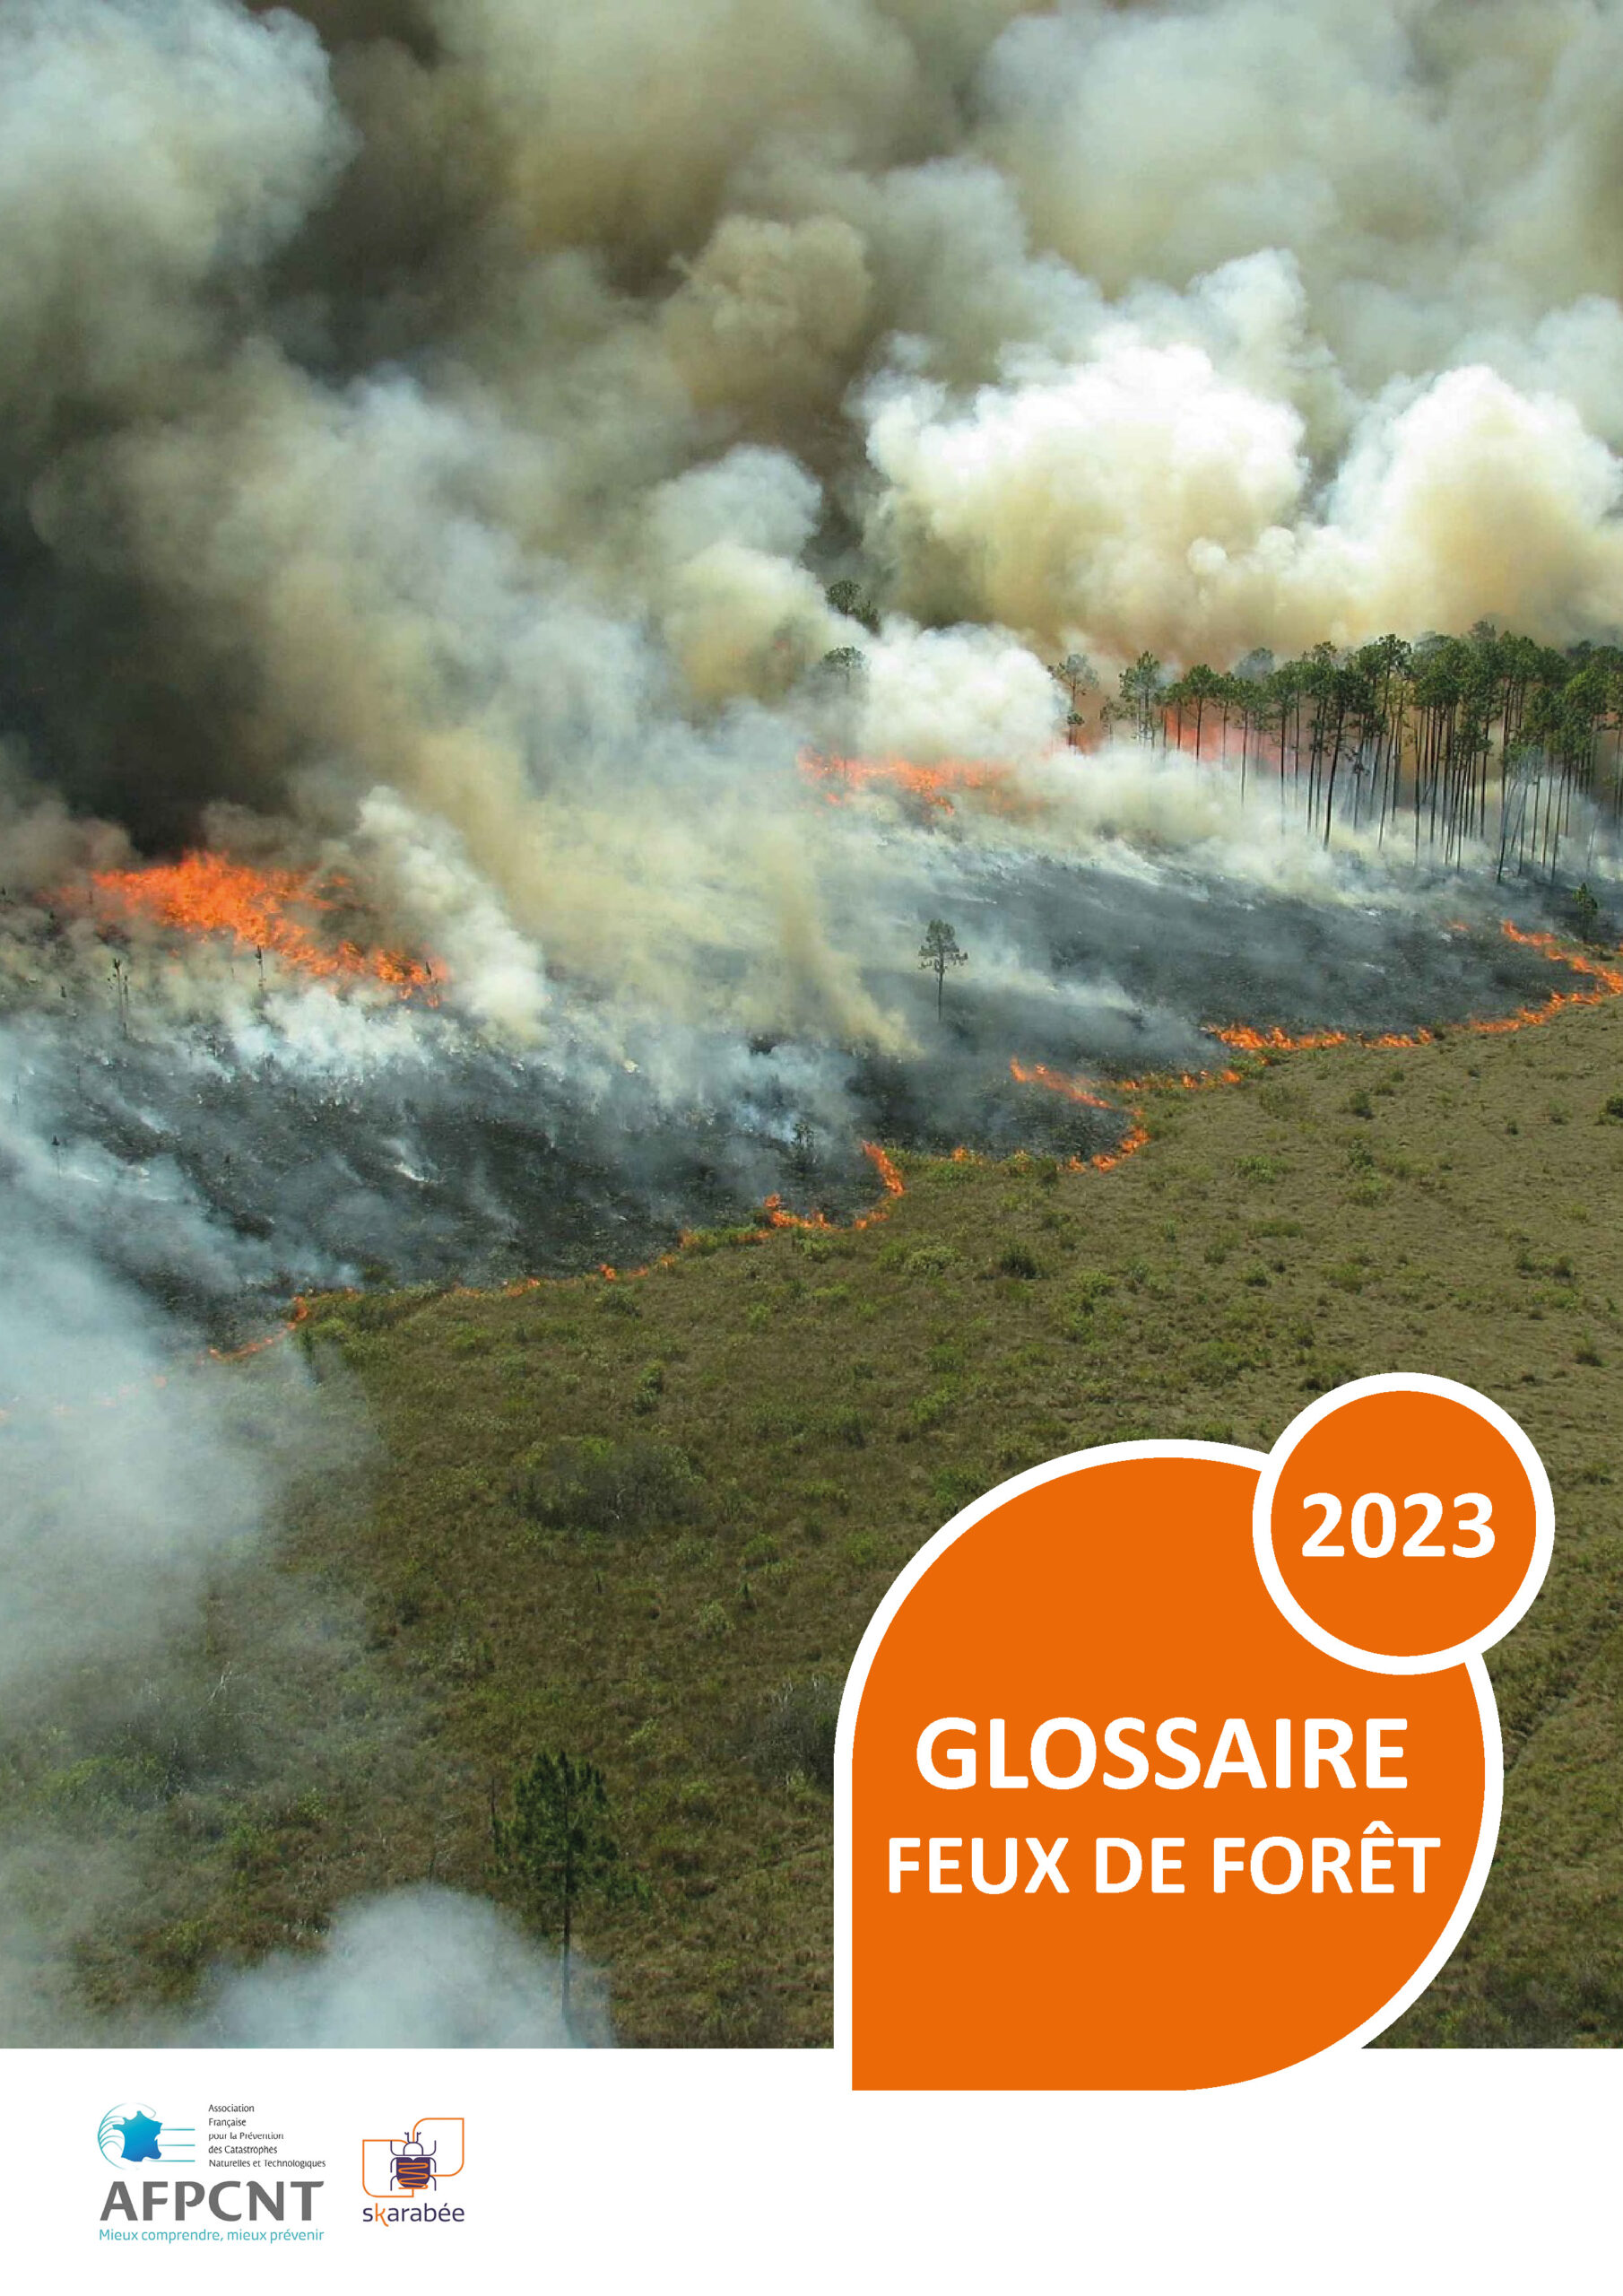 Glossaire feux de forêt